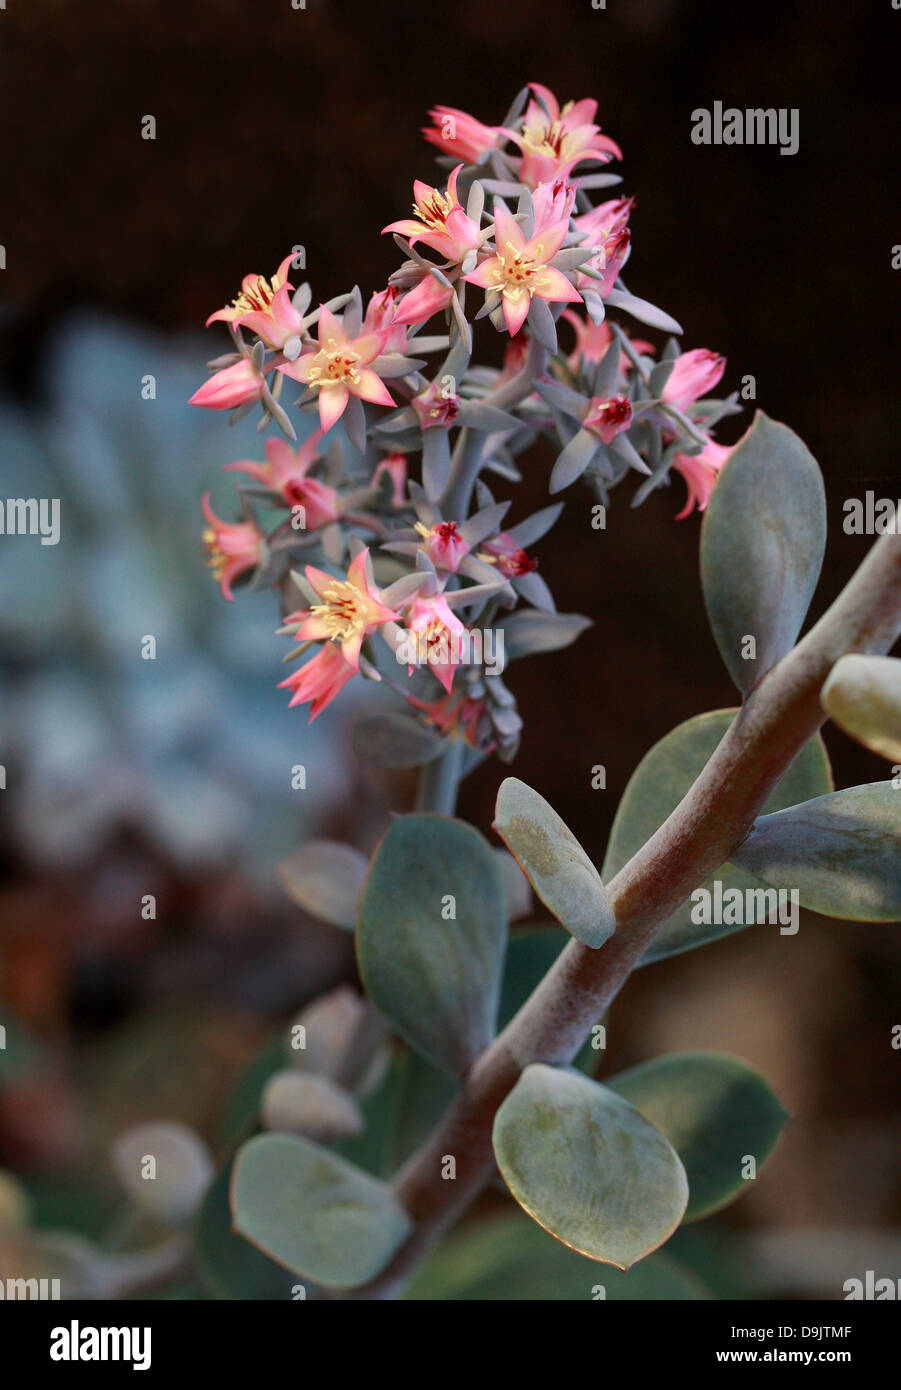 Echeveria, Echeveria gigantea, Crassulaceae. North and Central Mexico, North America. Stock Photo